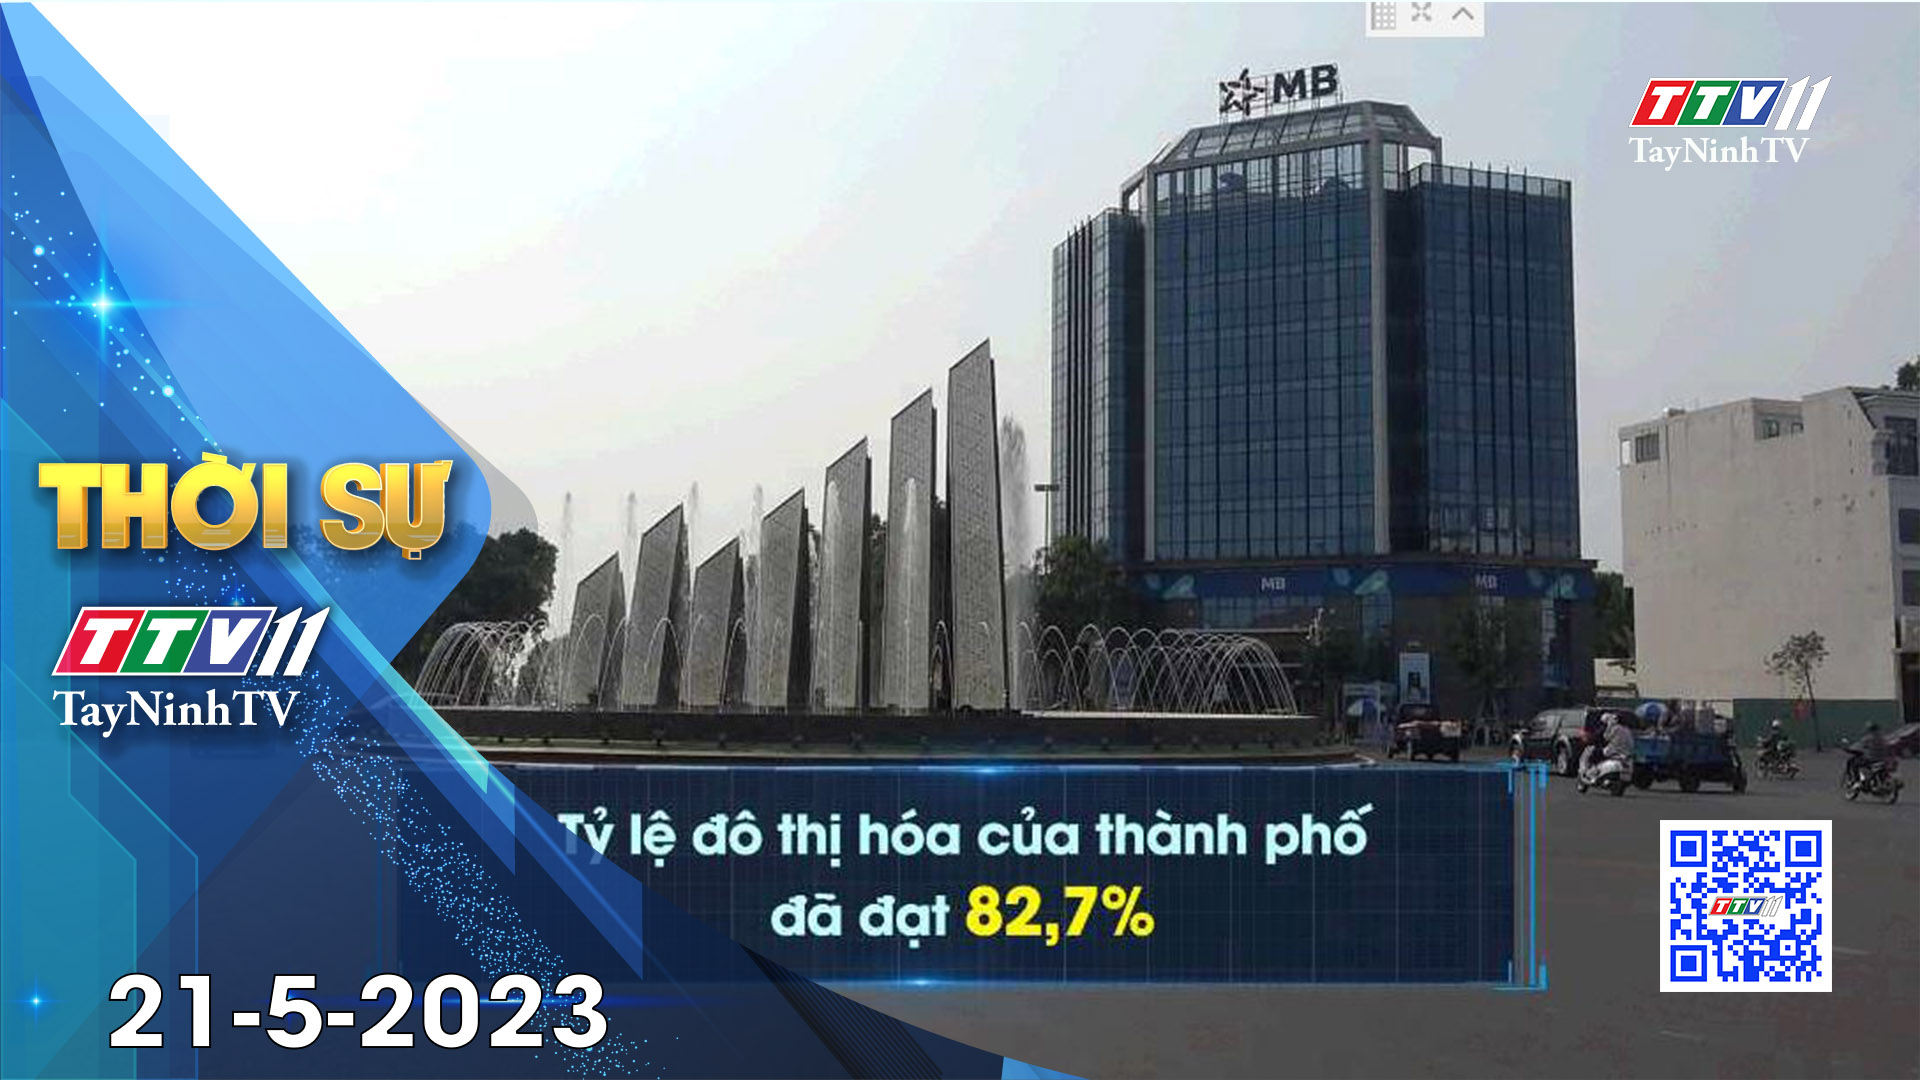 Thời sự Tây Ninh 21-5-2023 | Tin tức hôm nay | TayNinhTV